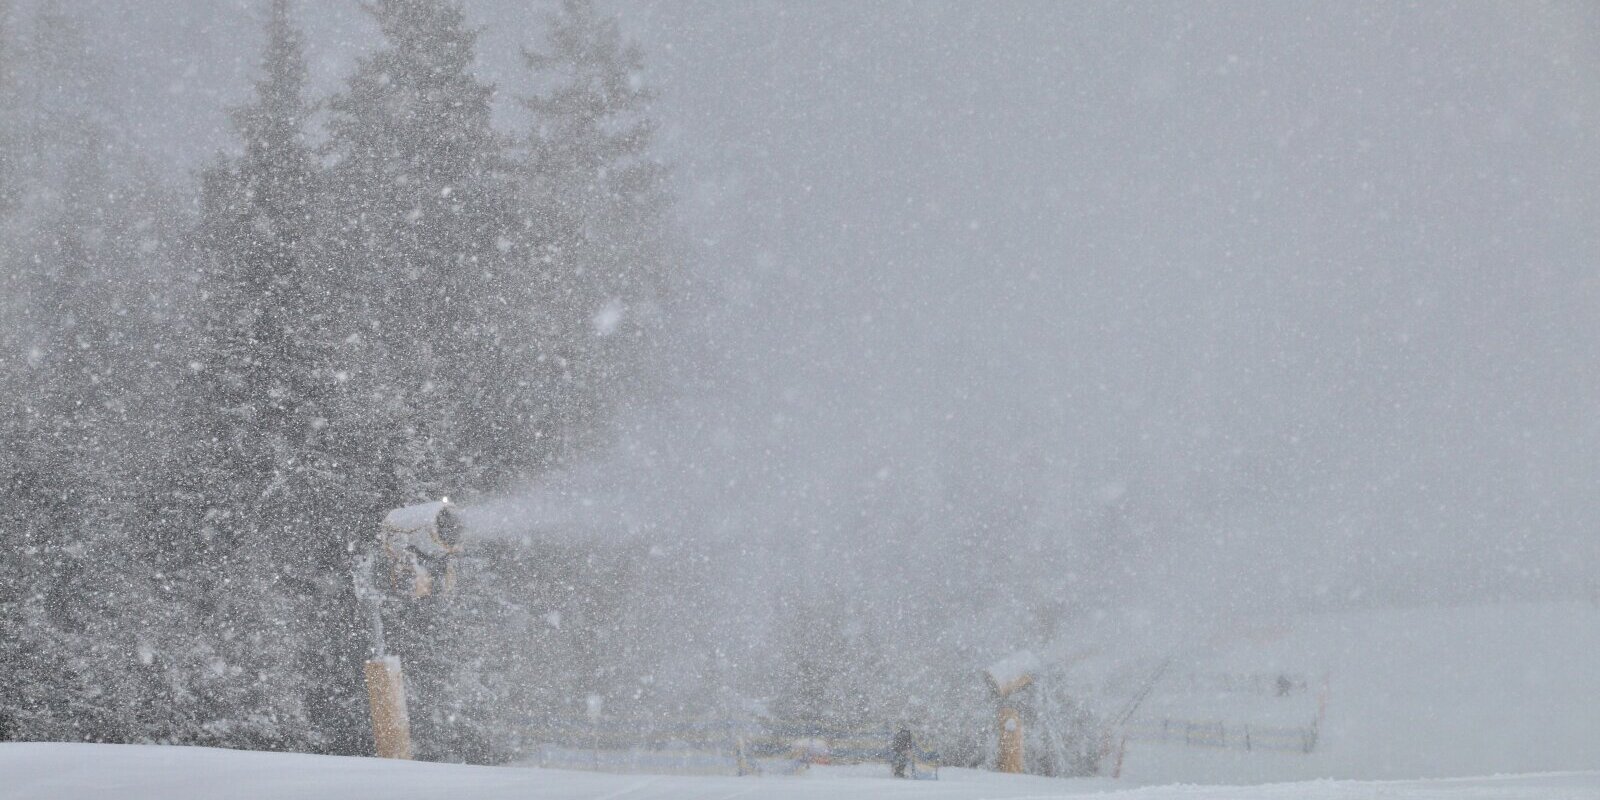 Sűrű havazás és intenzív hóágyúzás vasárnap Zell am See síterepén. A szomszédos Saalbachban is üzemeltek a hóágyúk - Fotó: Stánicz Balázs (Stani)